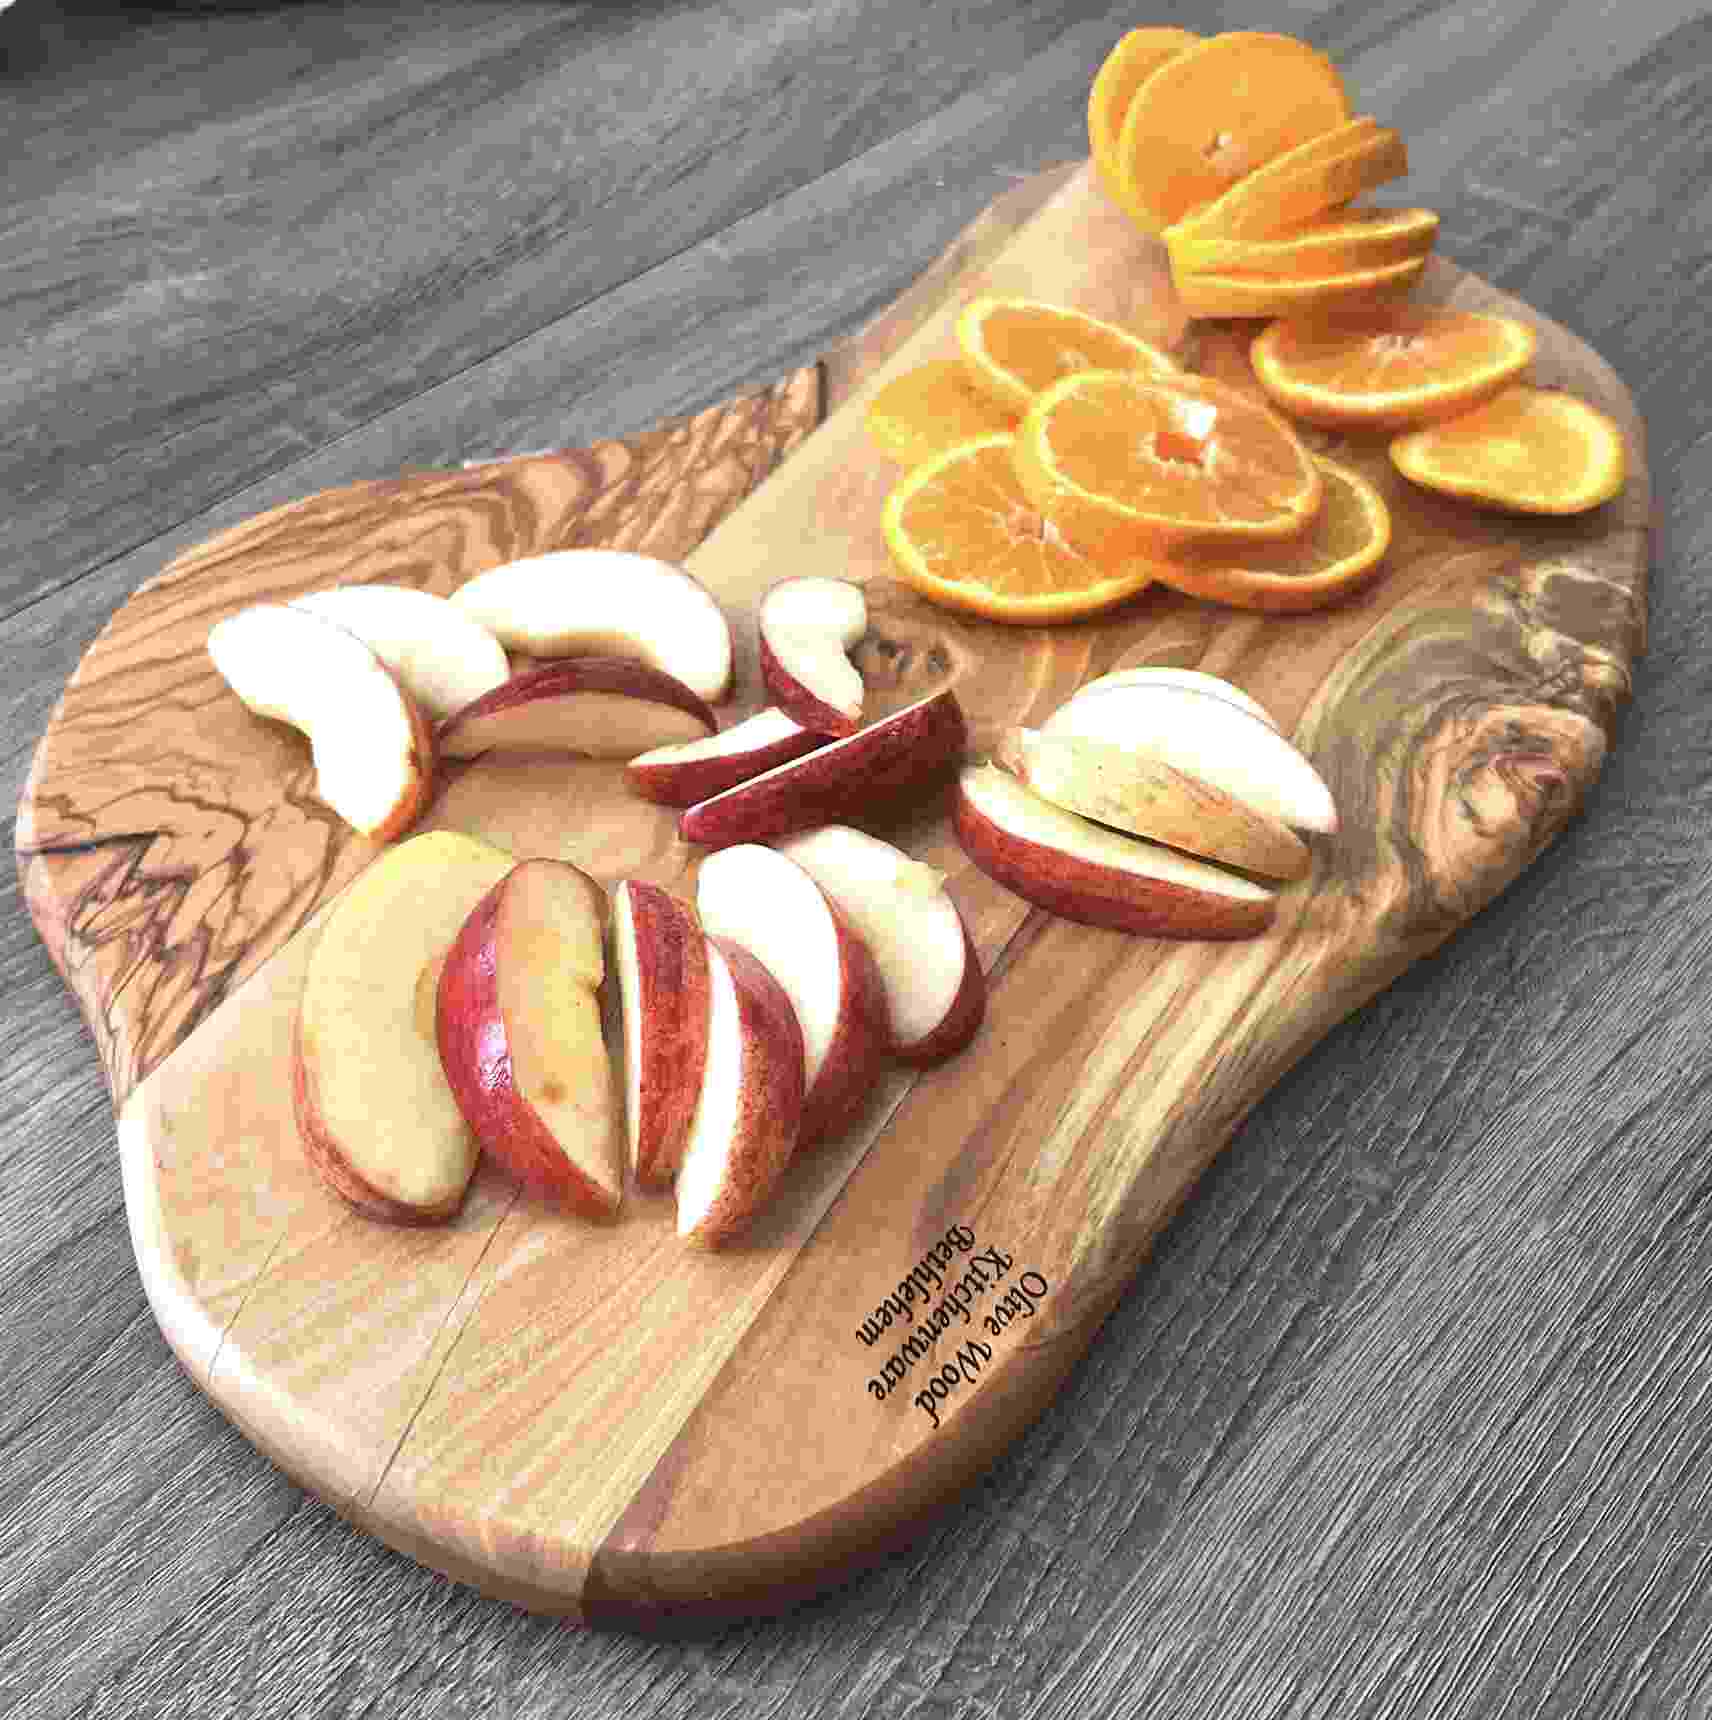 Olive Wood Cutting Board – Holyland Marketplace